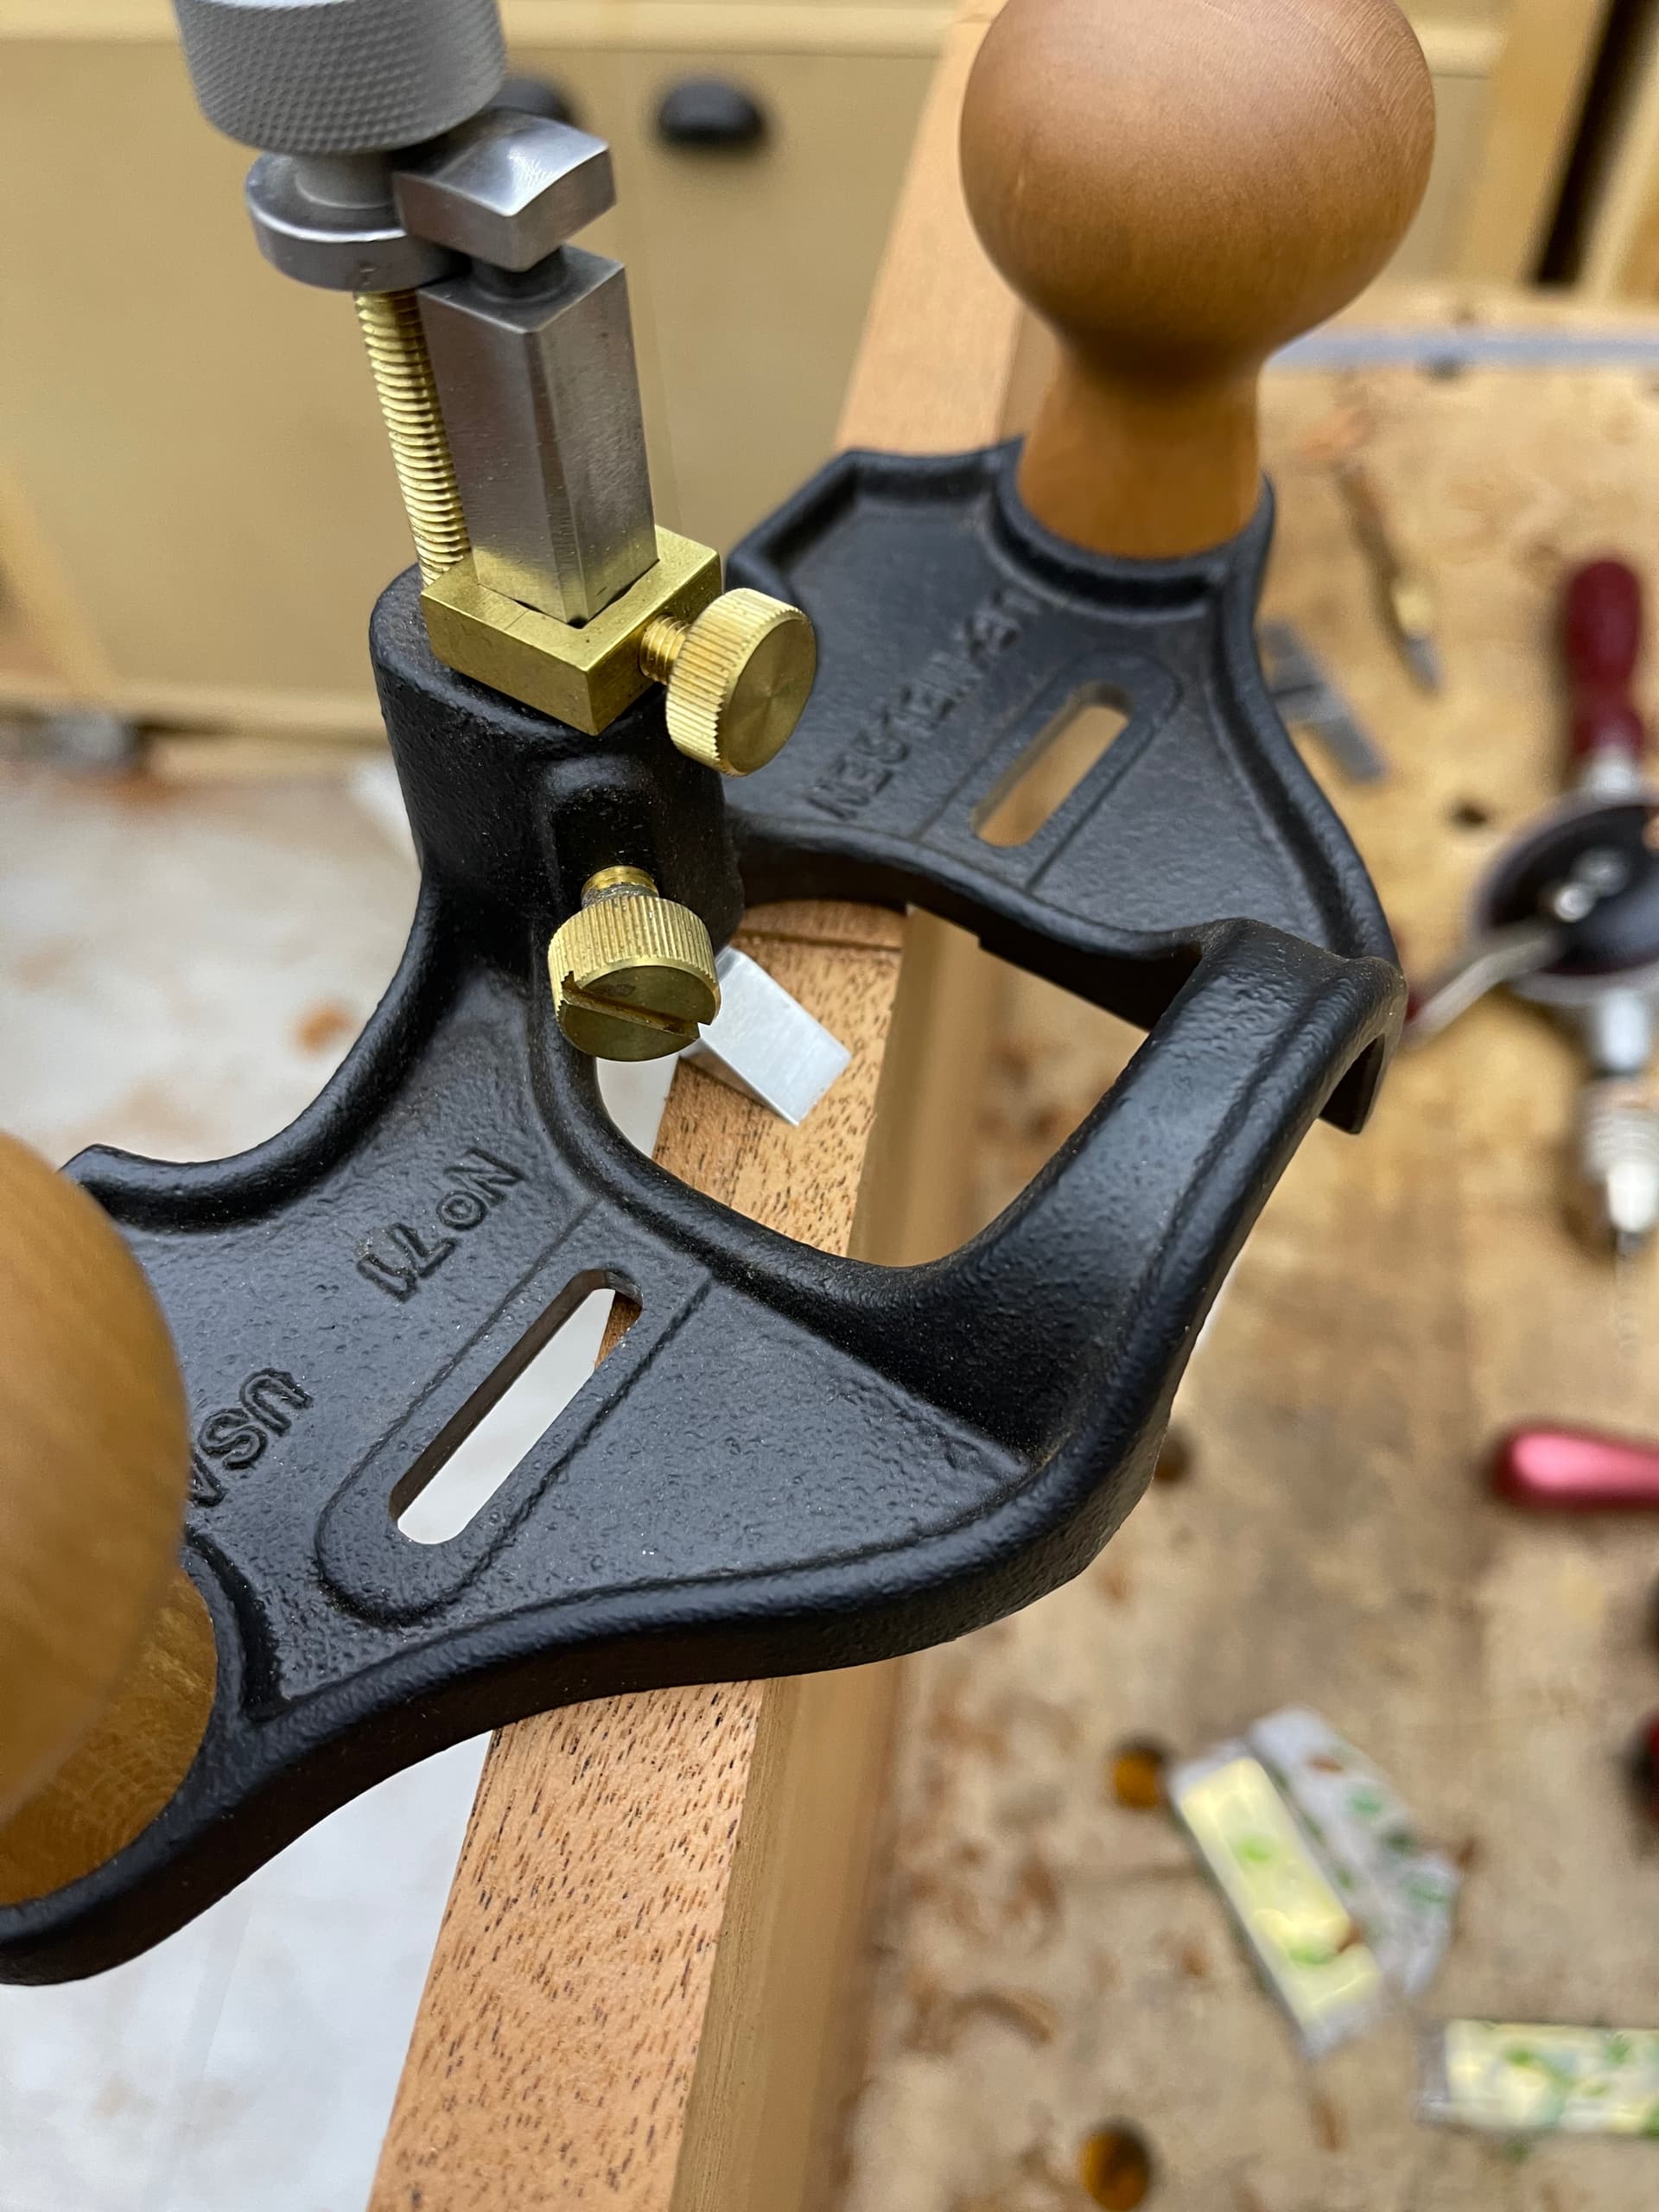 Armario de herramientas con panel perforado - Herramienta manual -  Foromadera